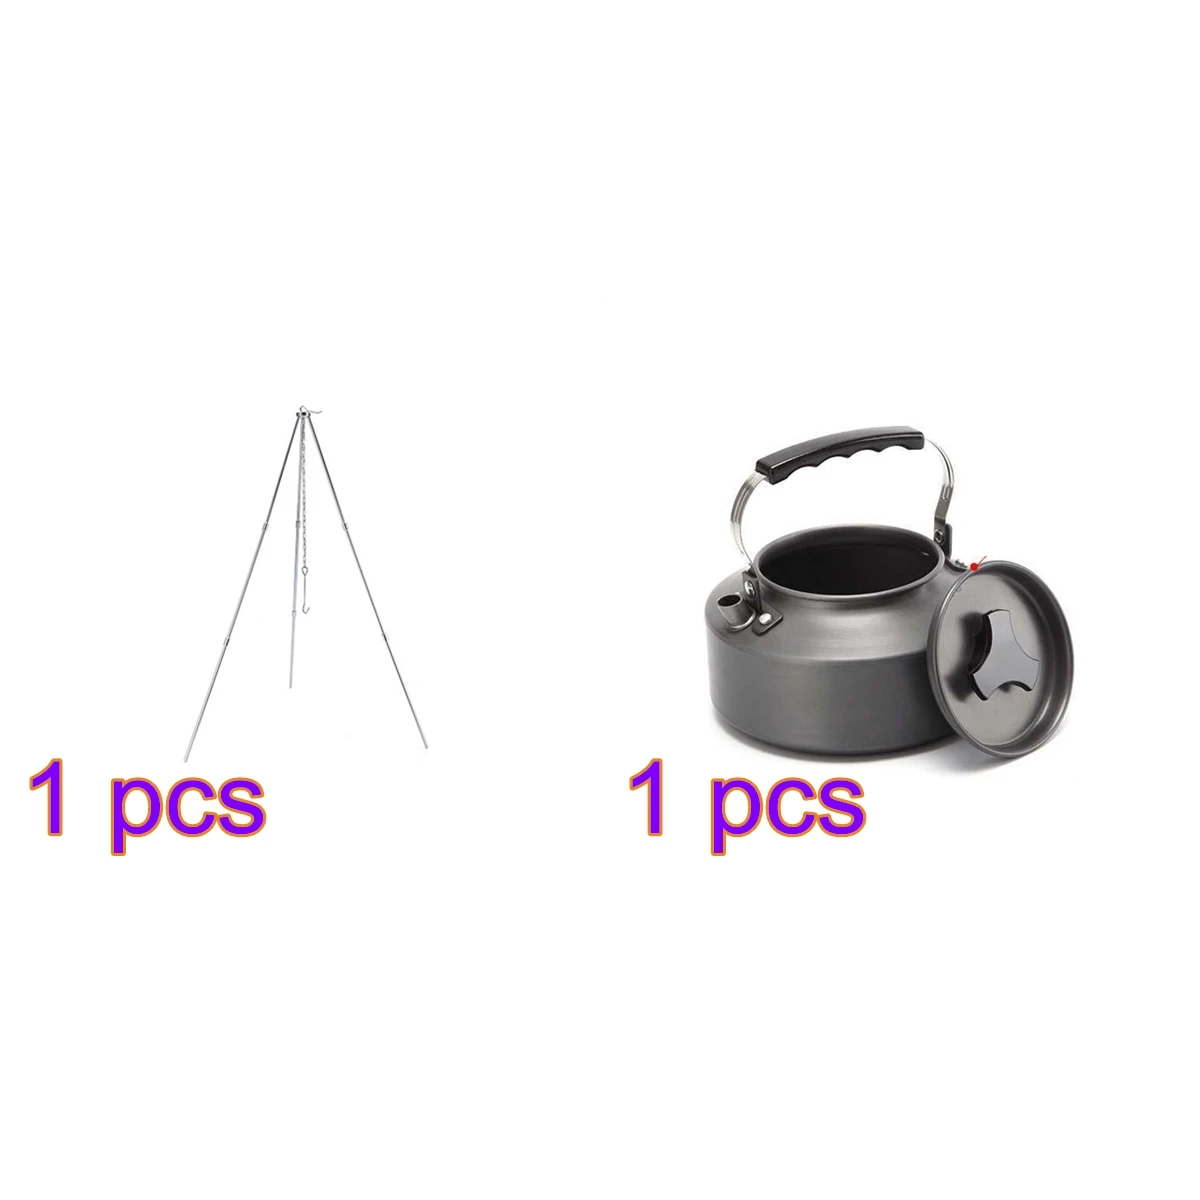 Походный набор для приготовления пищи портативный 0.8л/1,1 л чайник для пикника варочный штатив котелок для барбекю плита оборудование для похода на открытом воздухе - Цвет: Kettle and Tripod